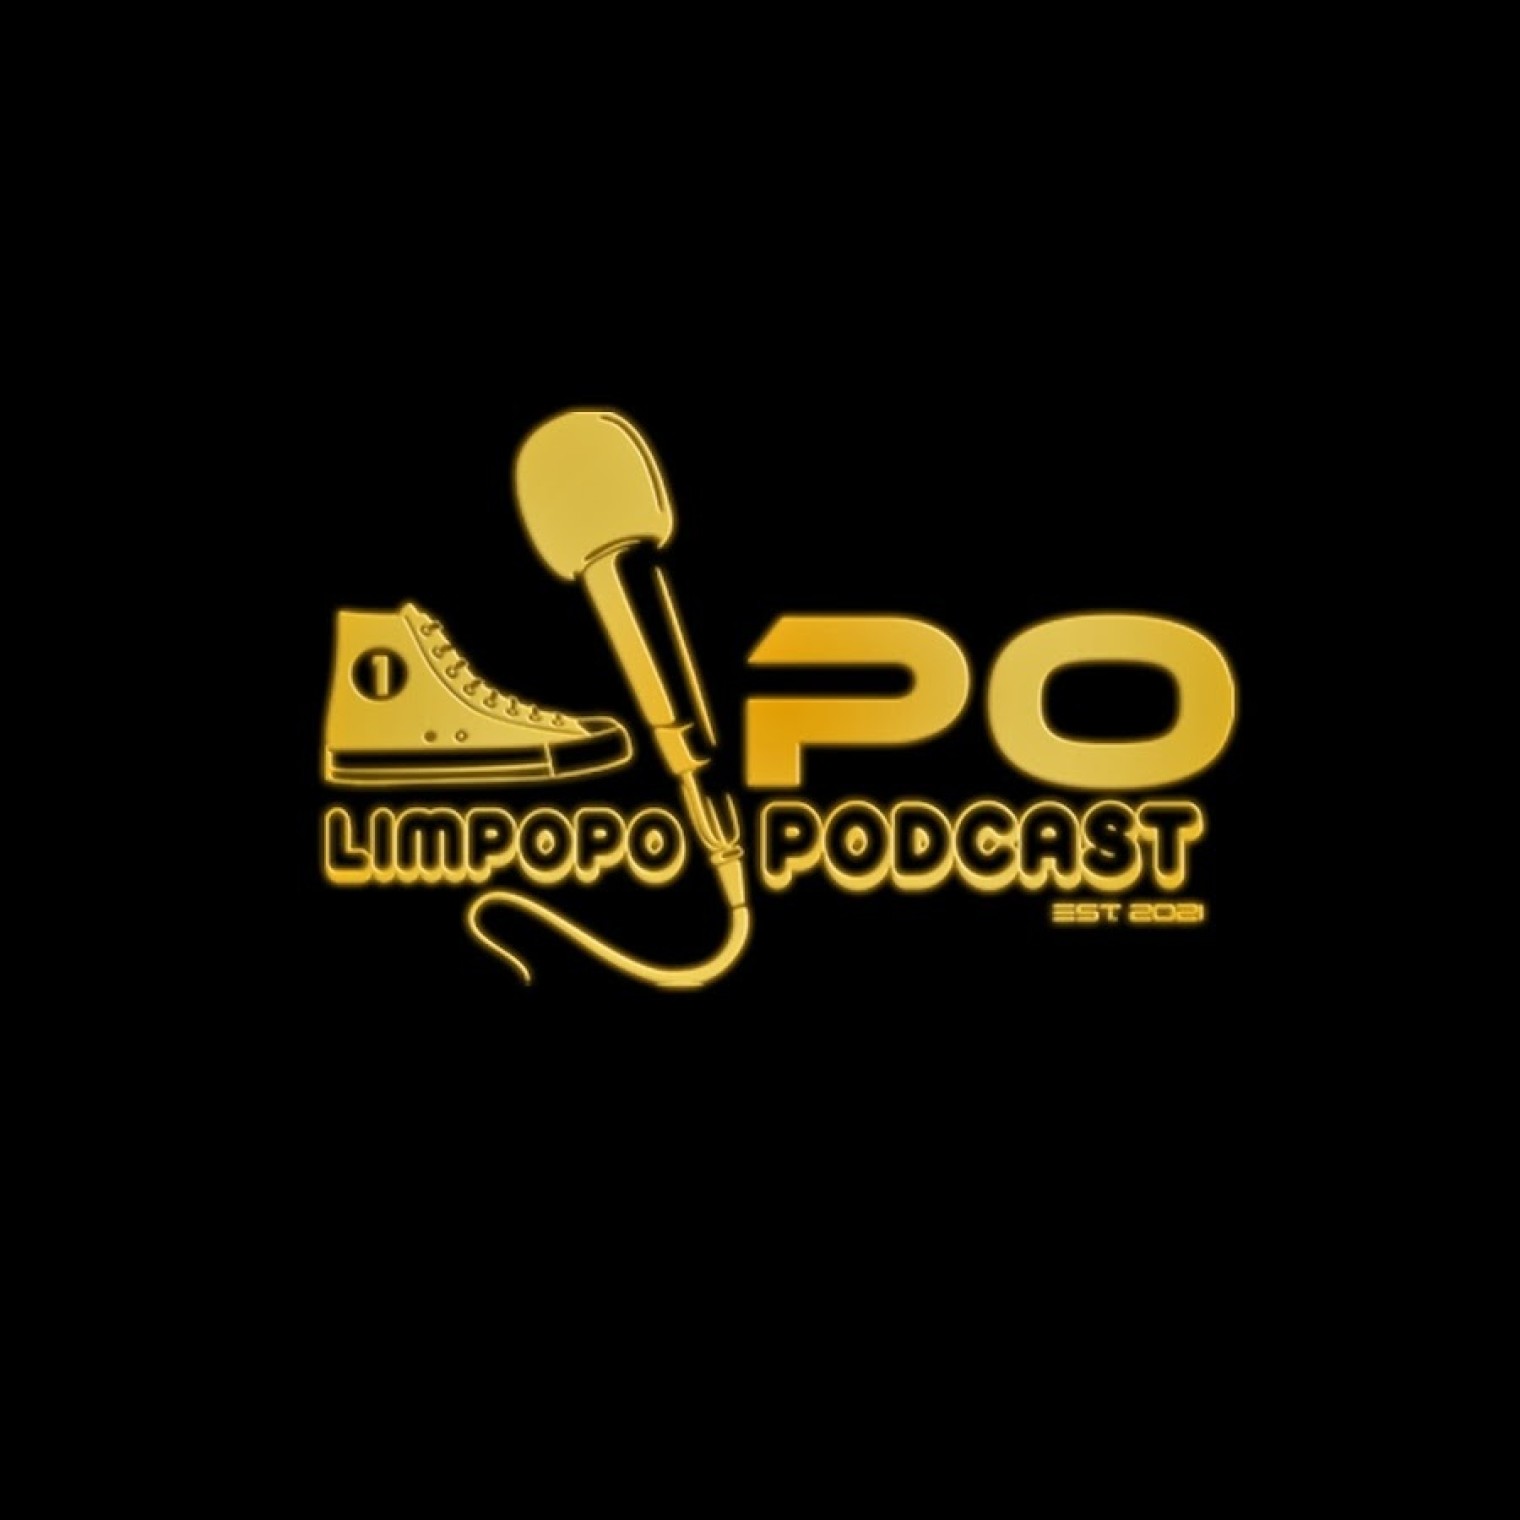 Limpopo Podcast -  Omee Otis 